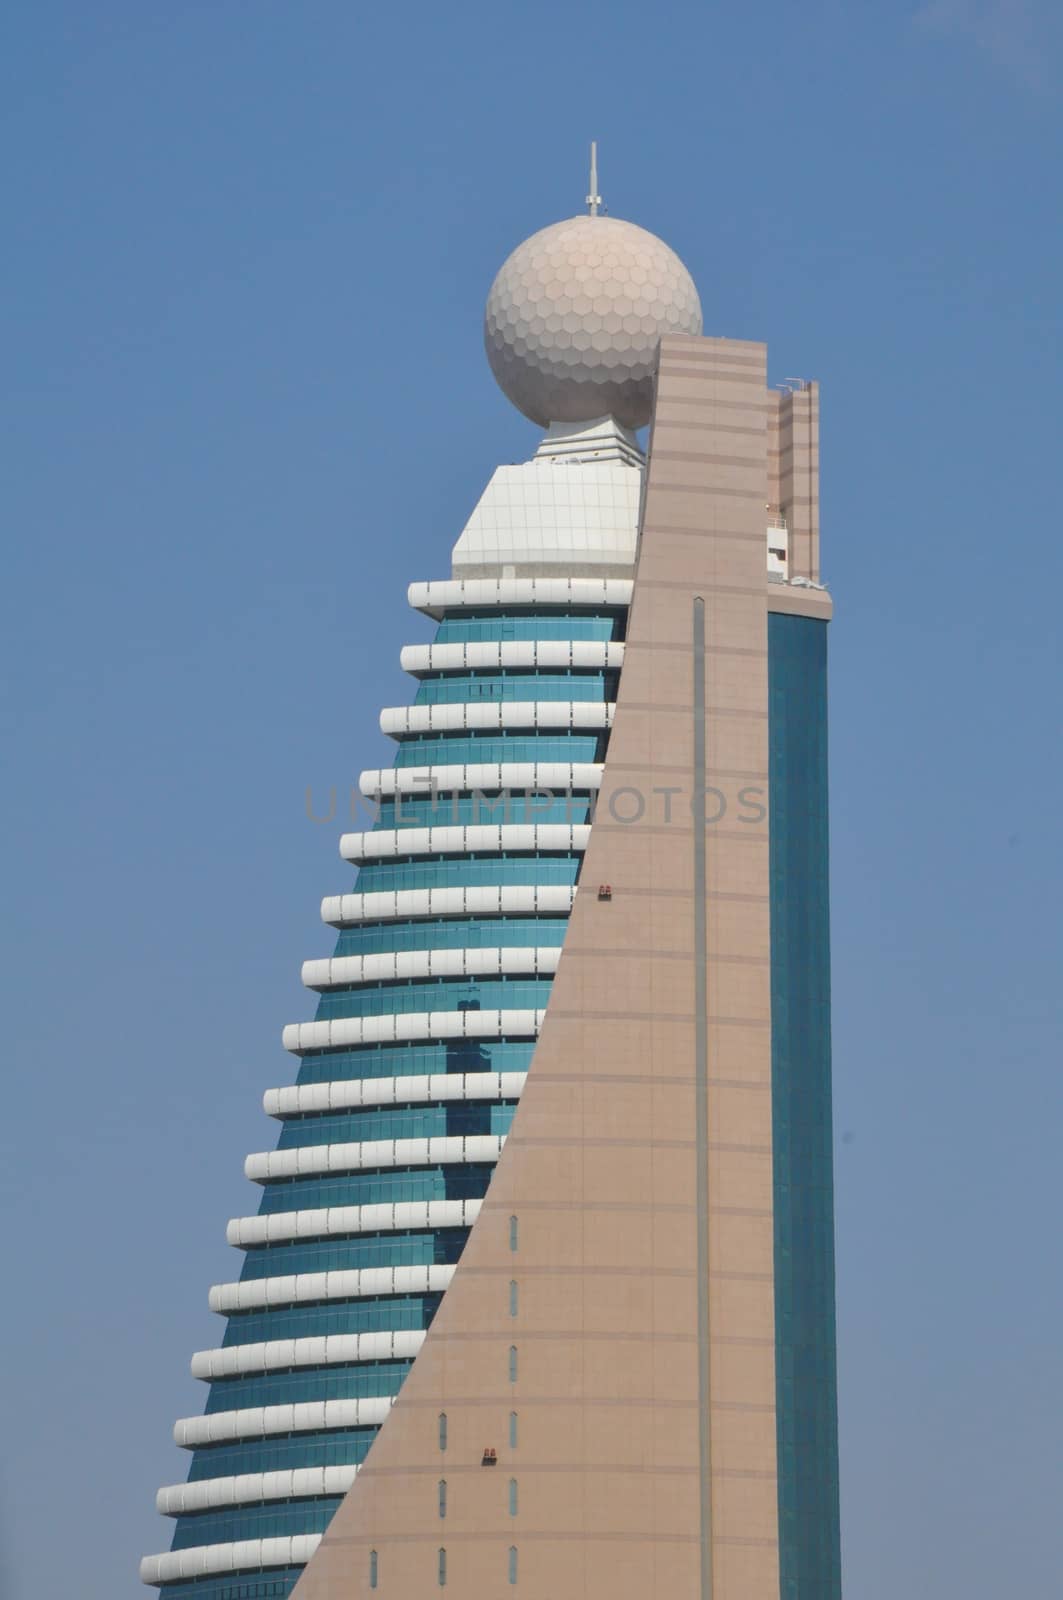 Etisalat Tower 2 in Dubai, UAE. Emirates Telecommunications Corporation (Etisalat) s a UAE based telecommunications services provider.